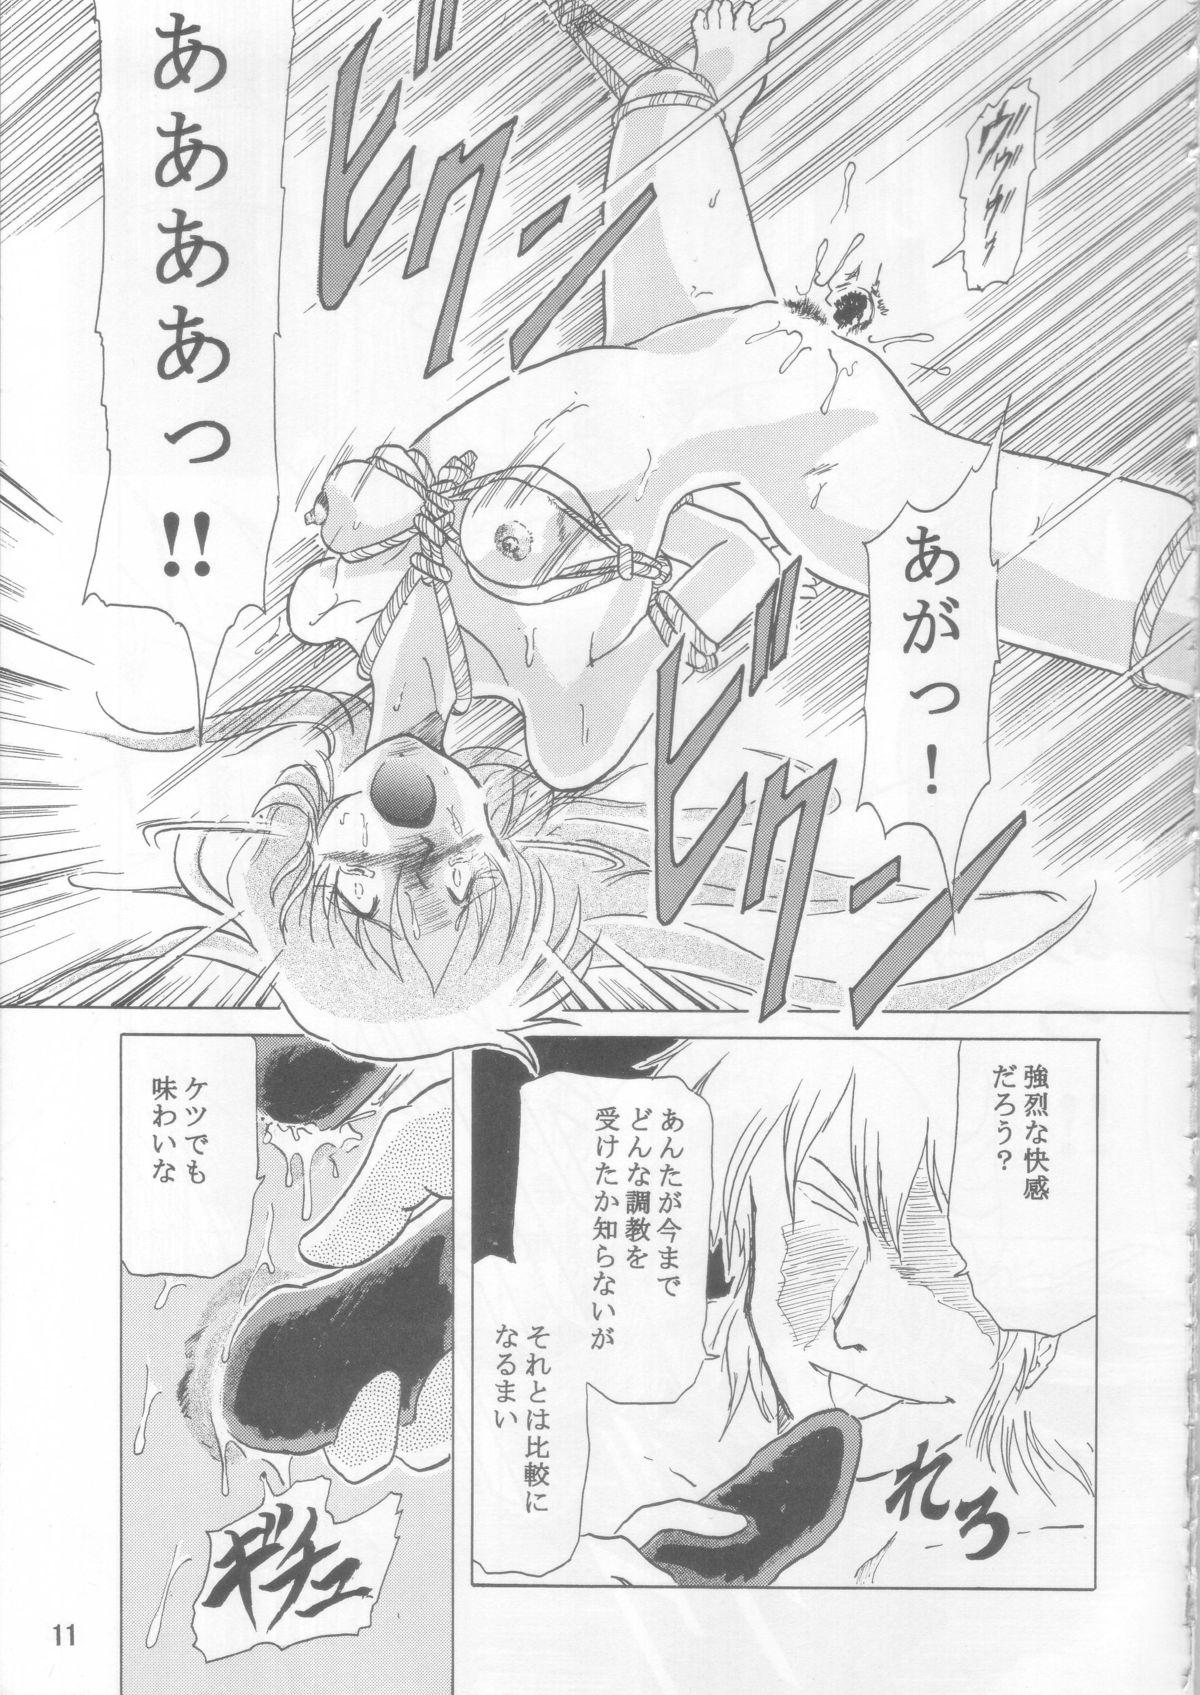 Lovers Ceila sama Jiyuujizai 3 - Aura battler dunbine Flaquita - Page 10